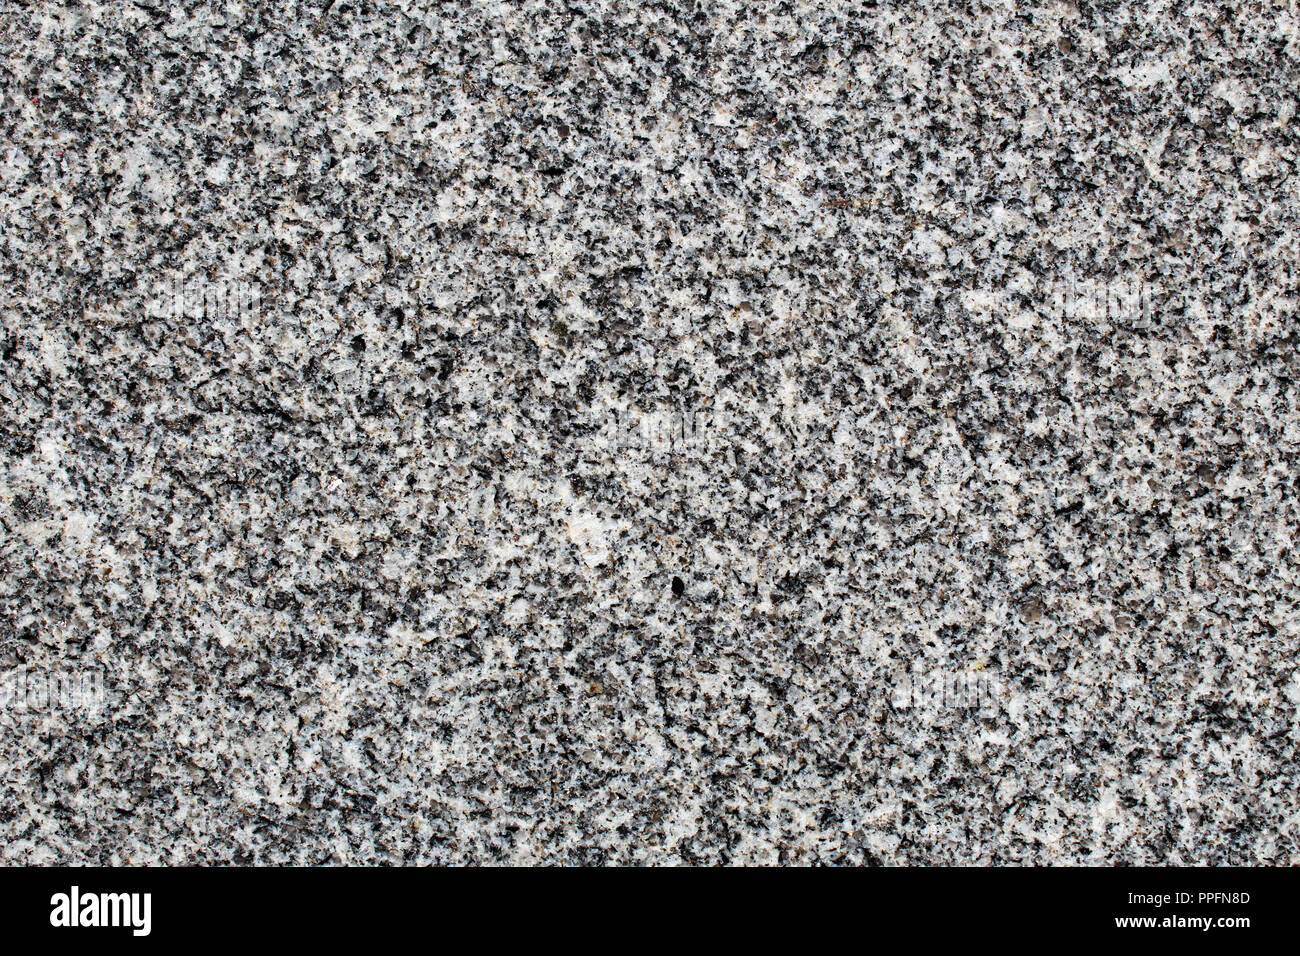 Roche de granite à grain fin à surface polie vu en détail Banque D'Images